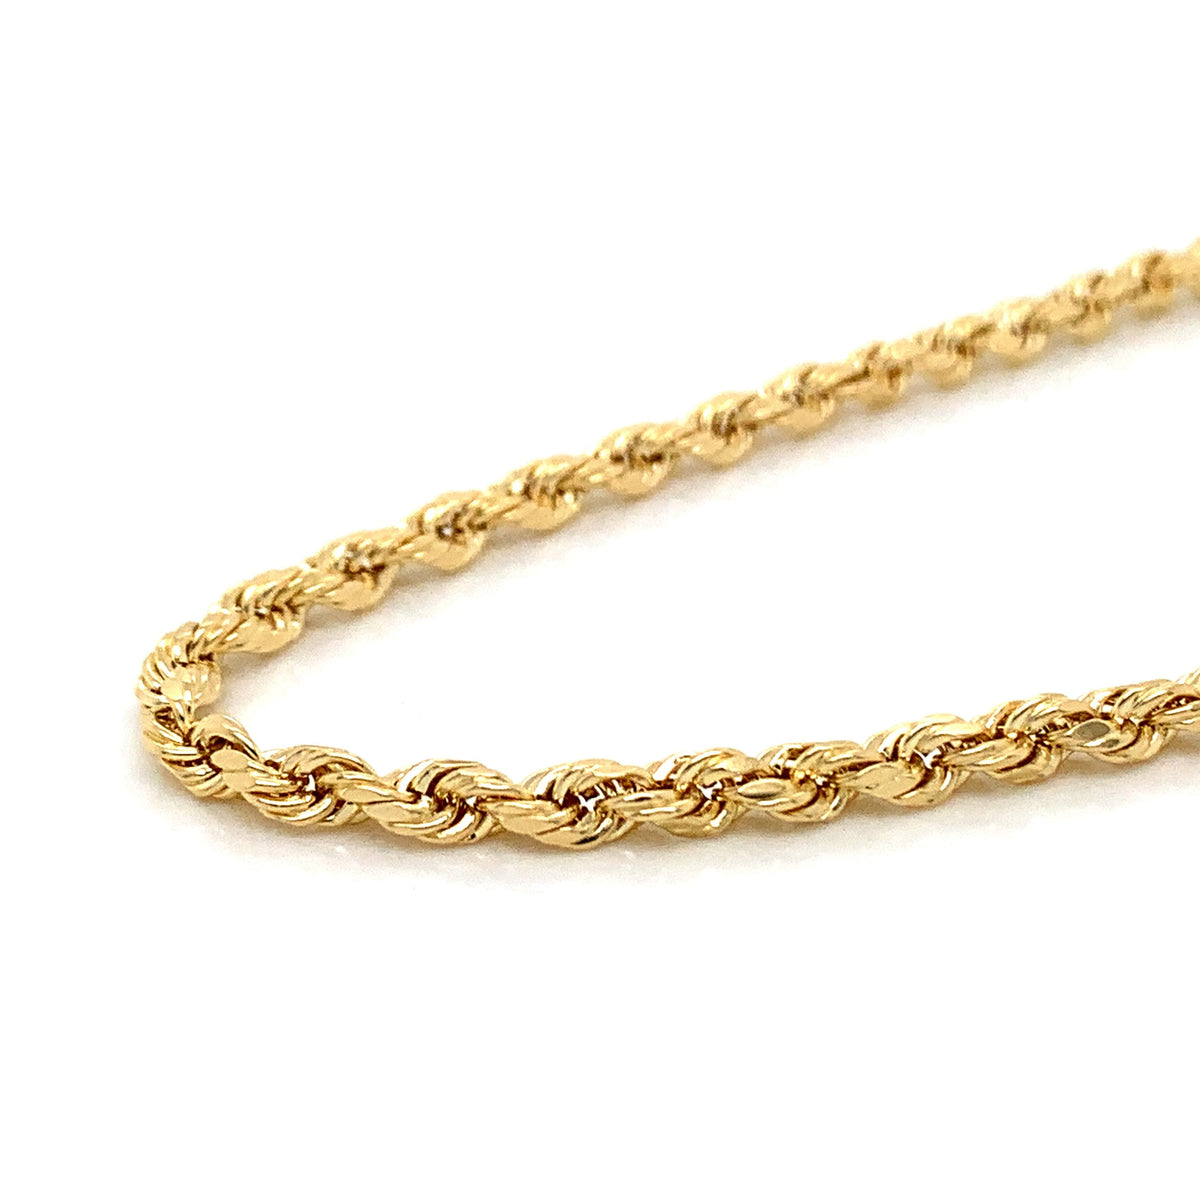 14K Gold Rope Chain (Regular)- 3mm - White Carat Diamonds 